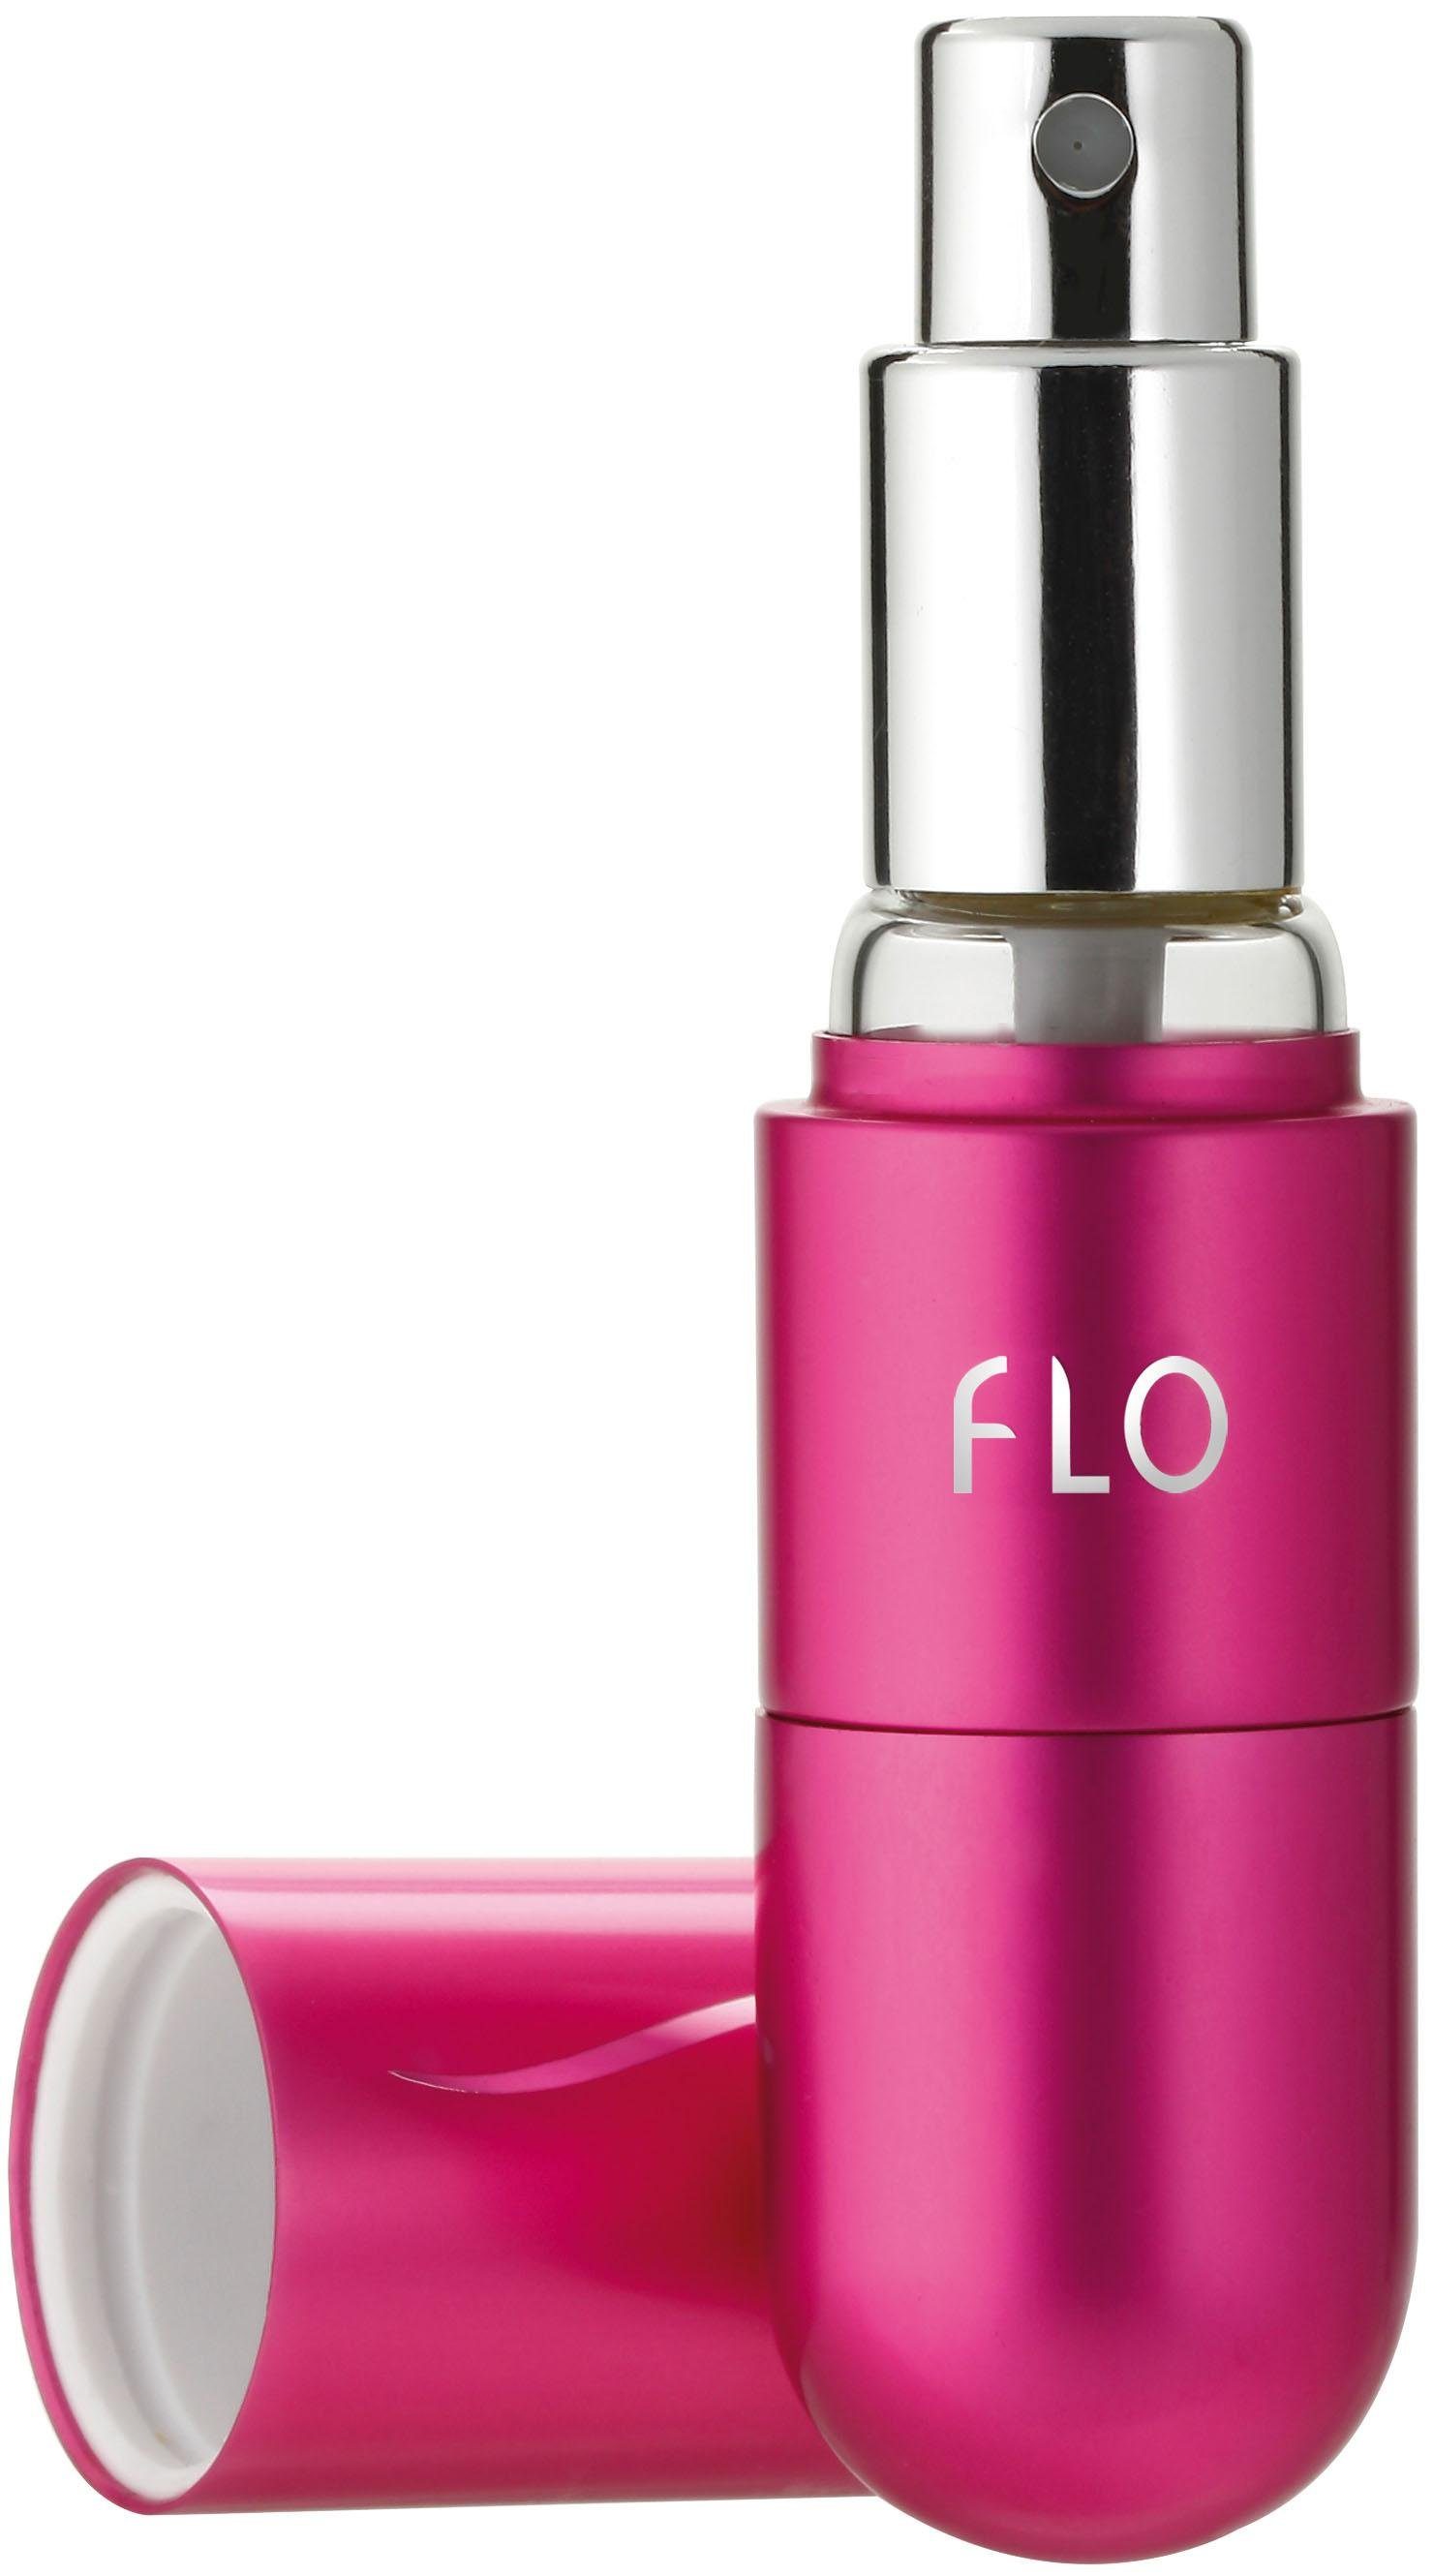 Accessories Parfüm-Zerstäuber, Atomizer Atomizer, pink Parfümzerstäuber FLO